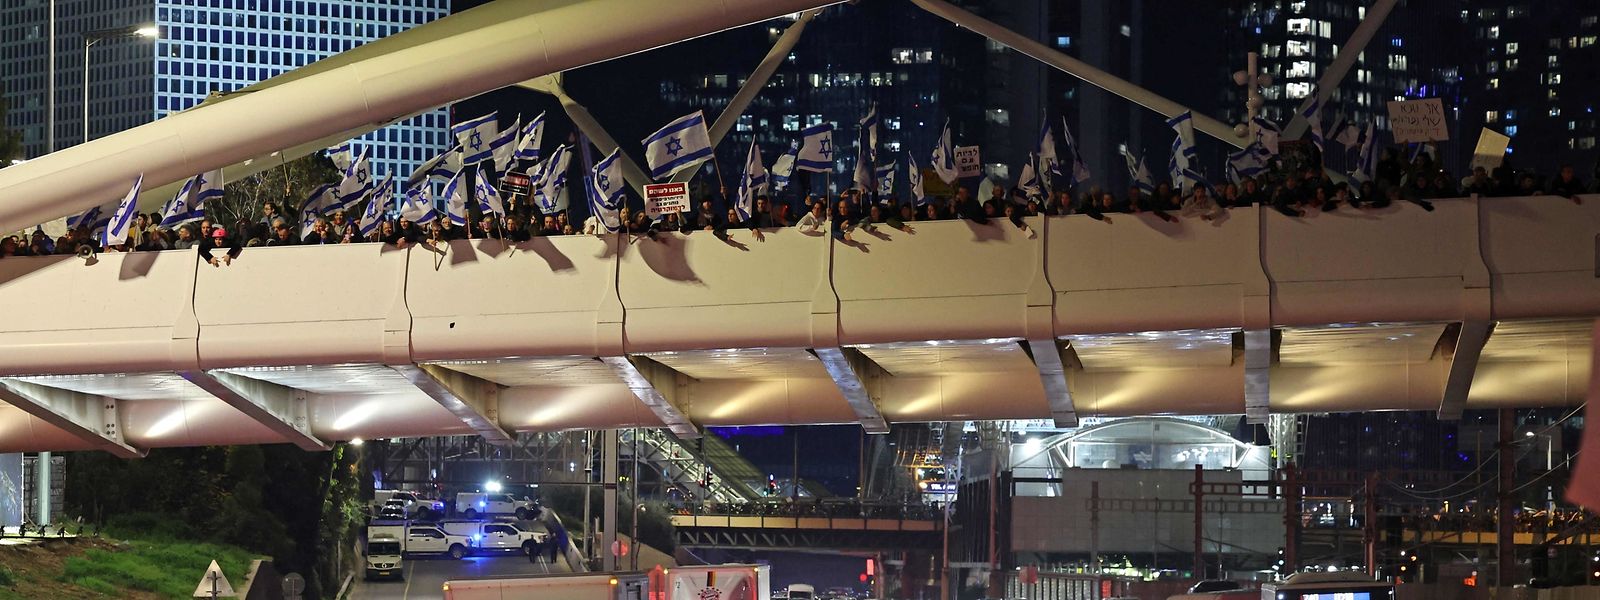 Die Massenproteste gegen die Justizpolitik der israelischen Regierung lassen nicht nach: Am Samstag demonstrierten erneut knapp 100.000 Menschen, unter anderem auf einer Autobahnbrücke in Tel Aviv.